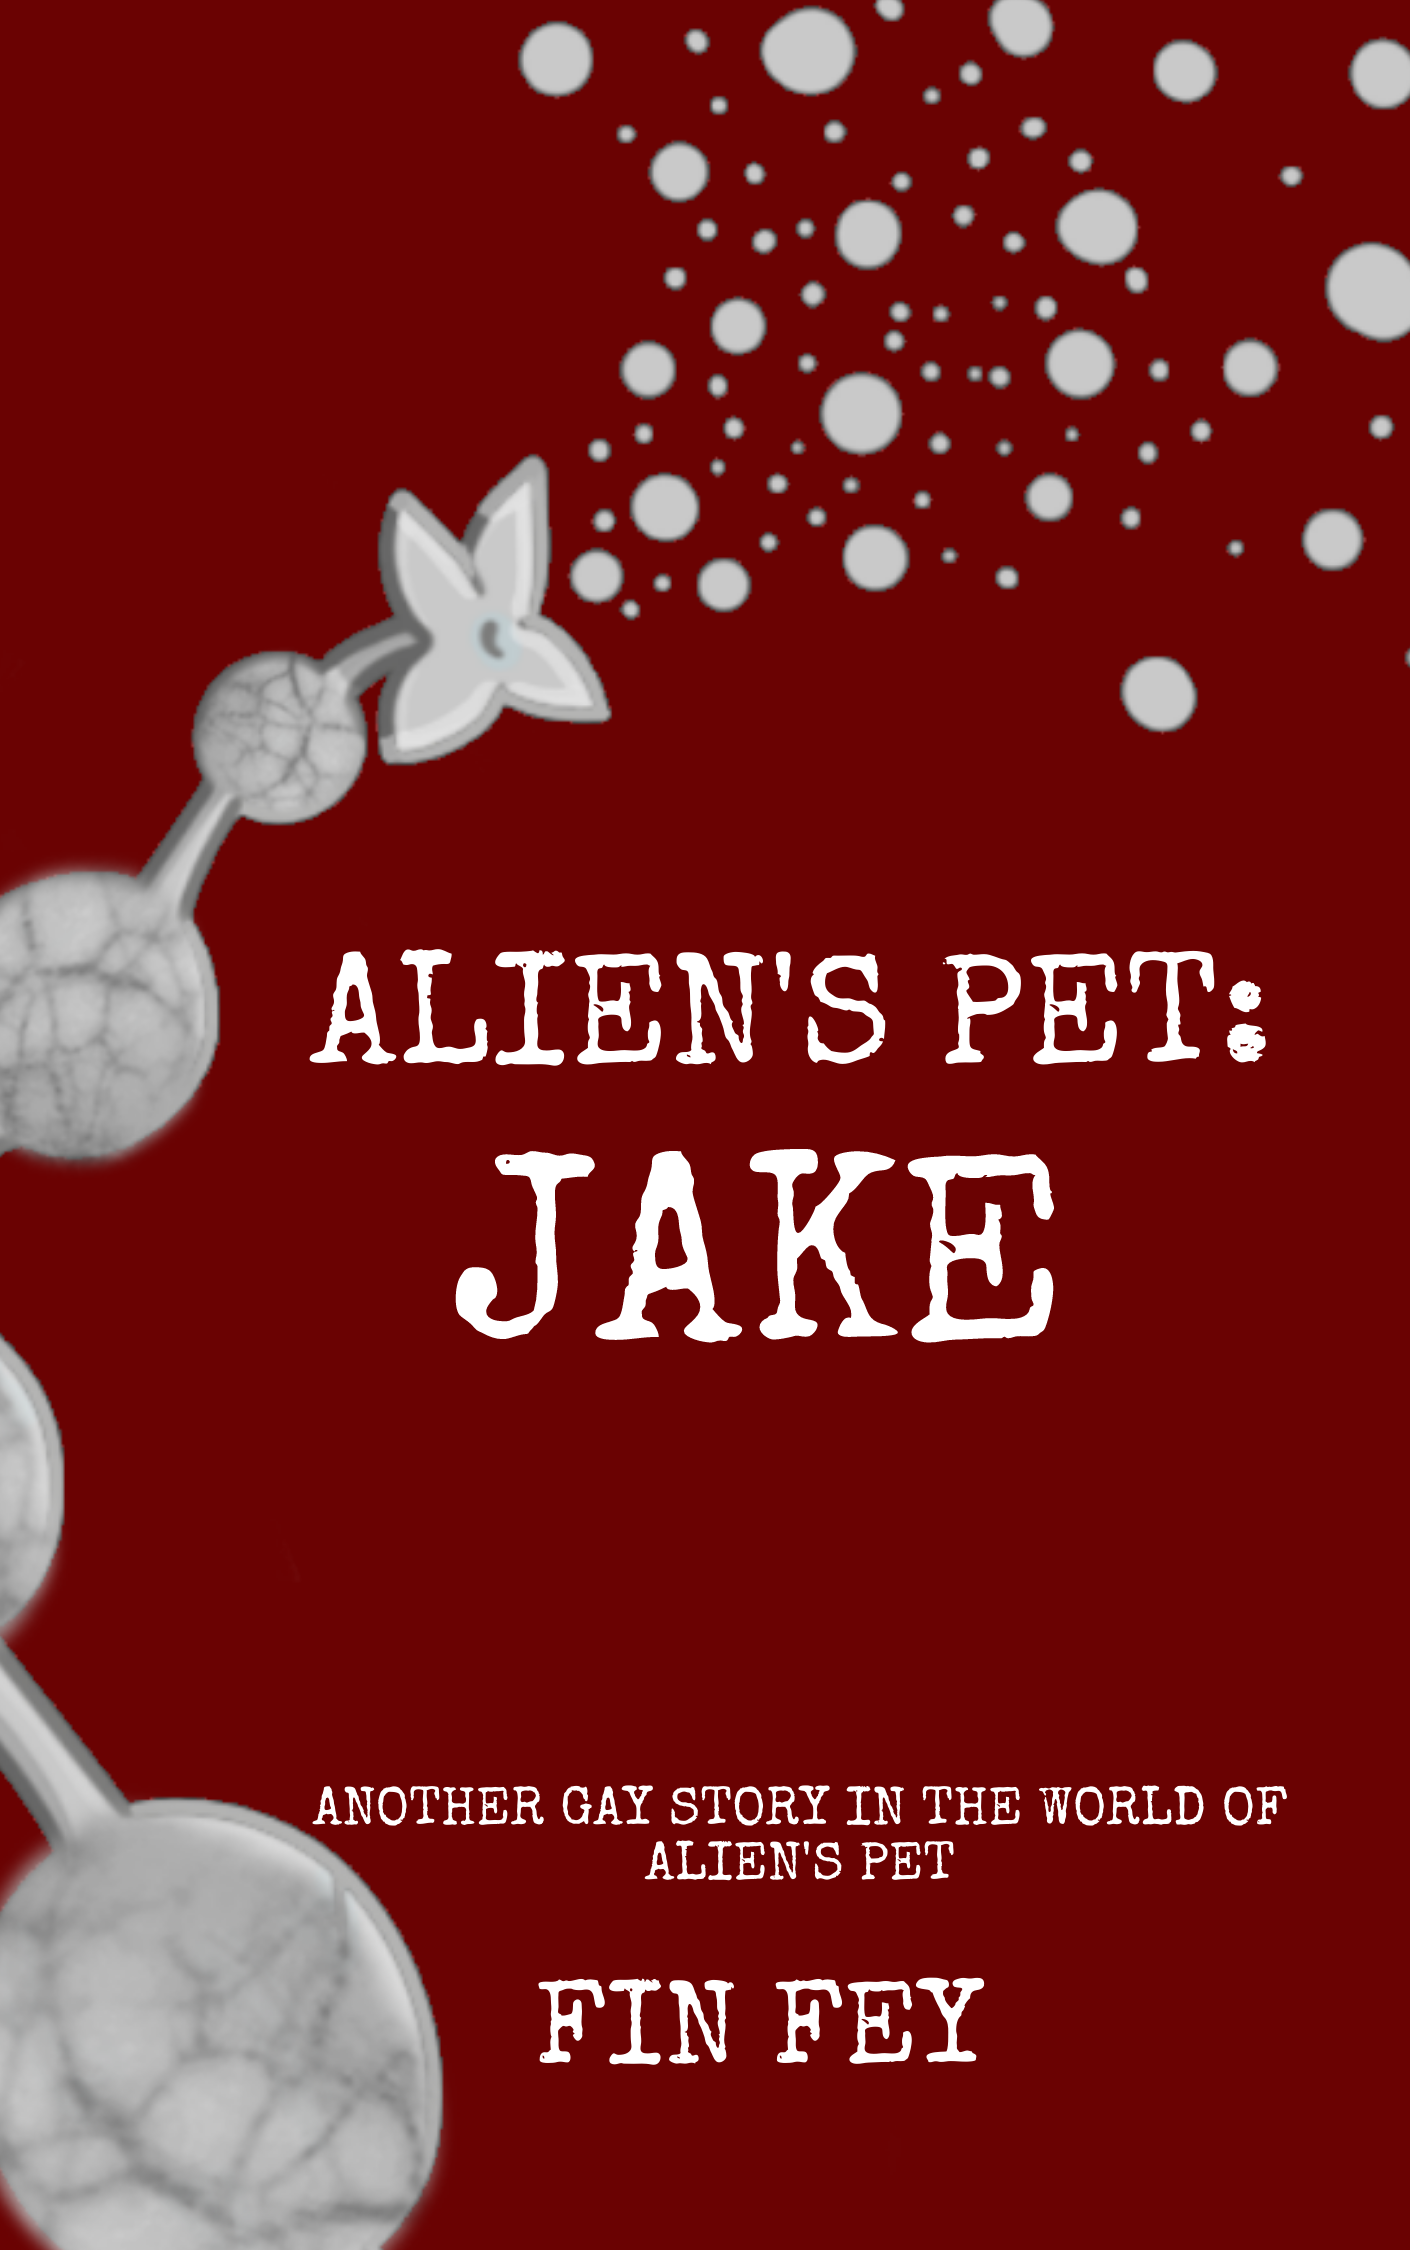 Alien's Pet Jake